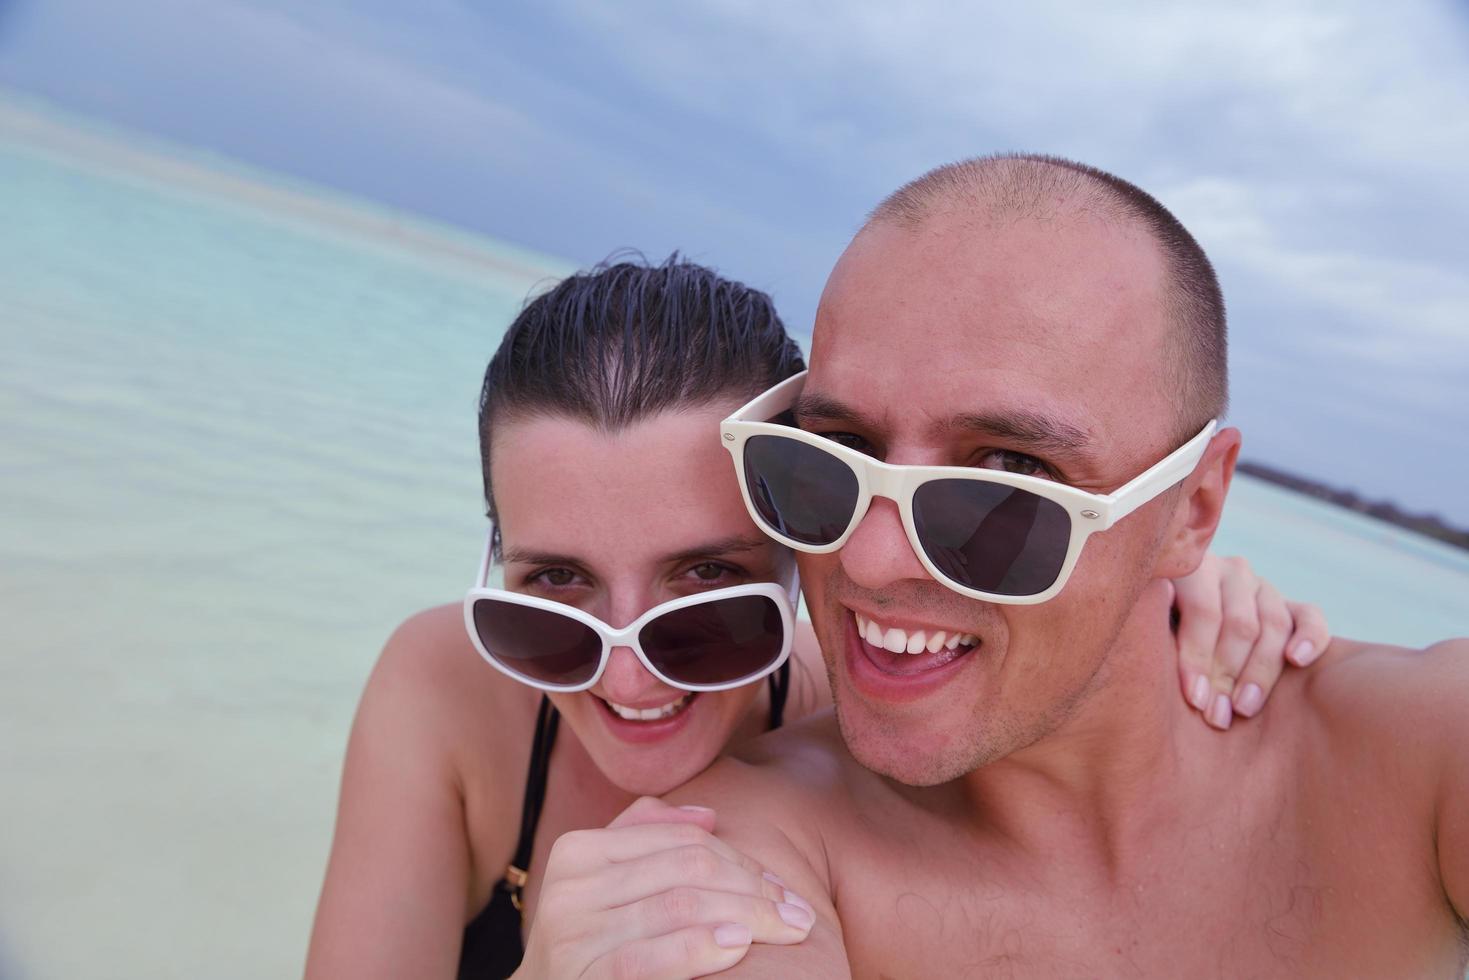 Lycklig ung par på sommar semester ha roligt och koppla av på strand foto